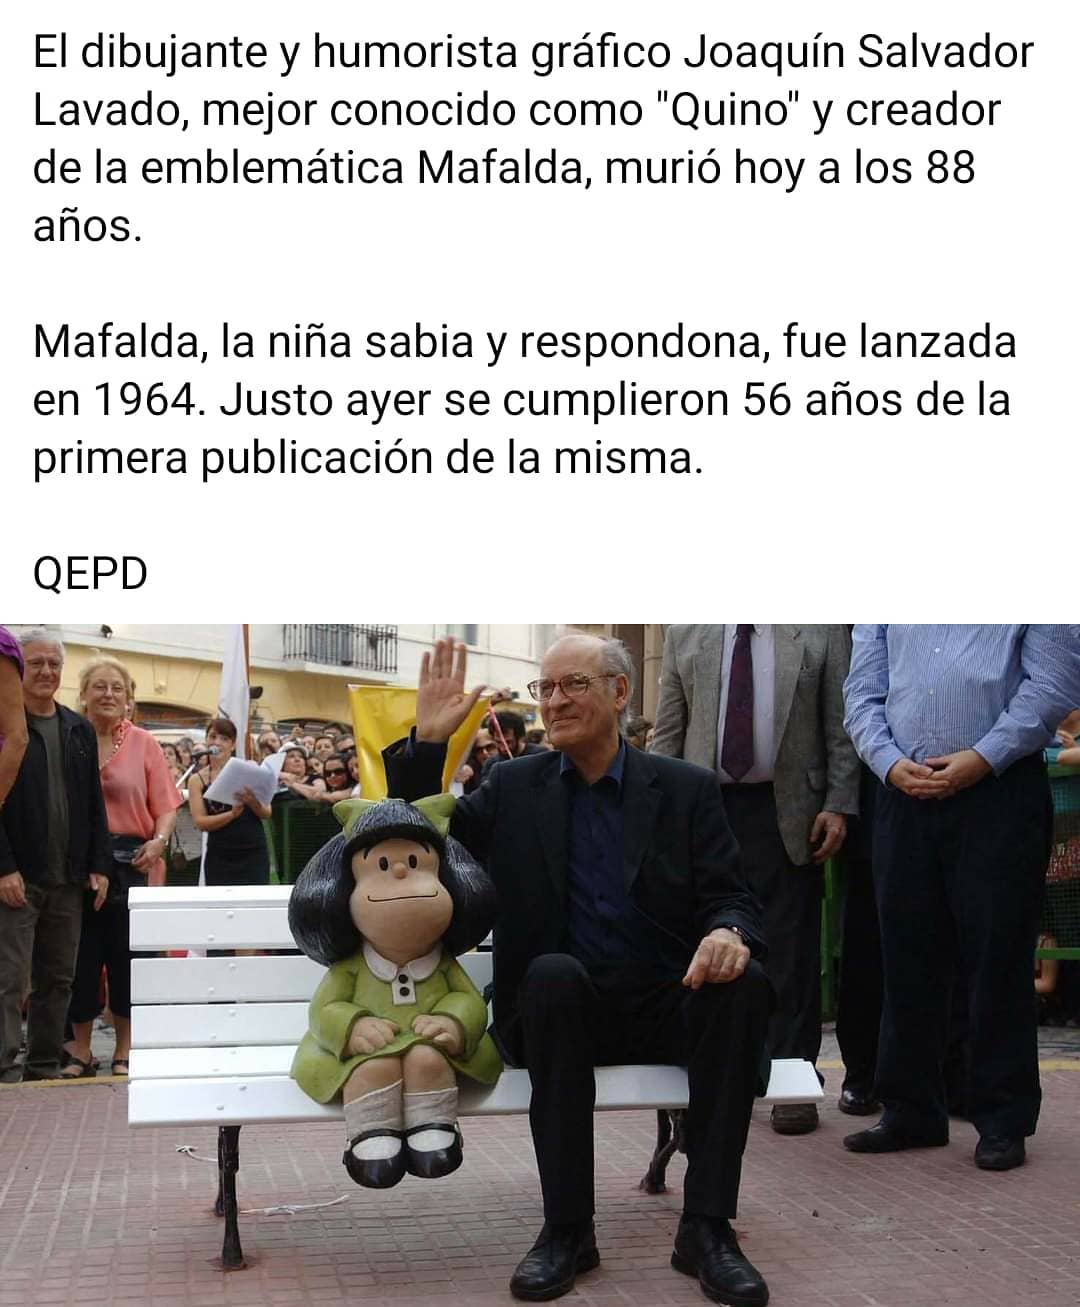 El dibujante y humorista gráfico Joaquín Salvador Lavado, mejor conocido como "Quino" y creador de la emblemática Mafalda, murió hoy a los 88 años.  Mafalda, la niña sabia y respondona, fue lanzada en 1964. Justo ayer se cumplieron 56 años de la primera publicación de la misma.  QEPD